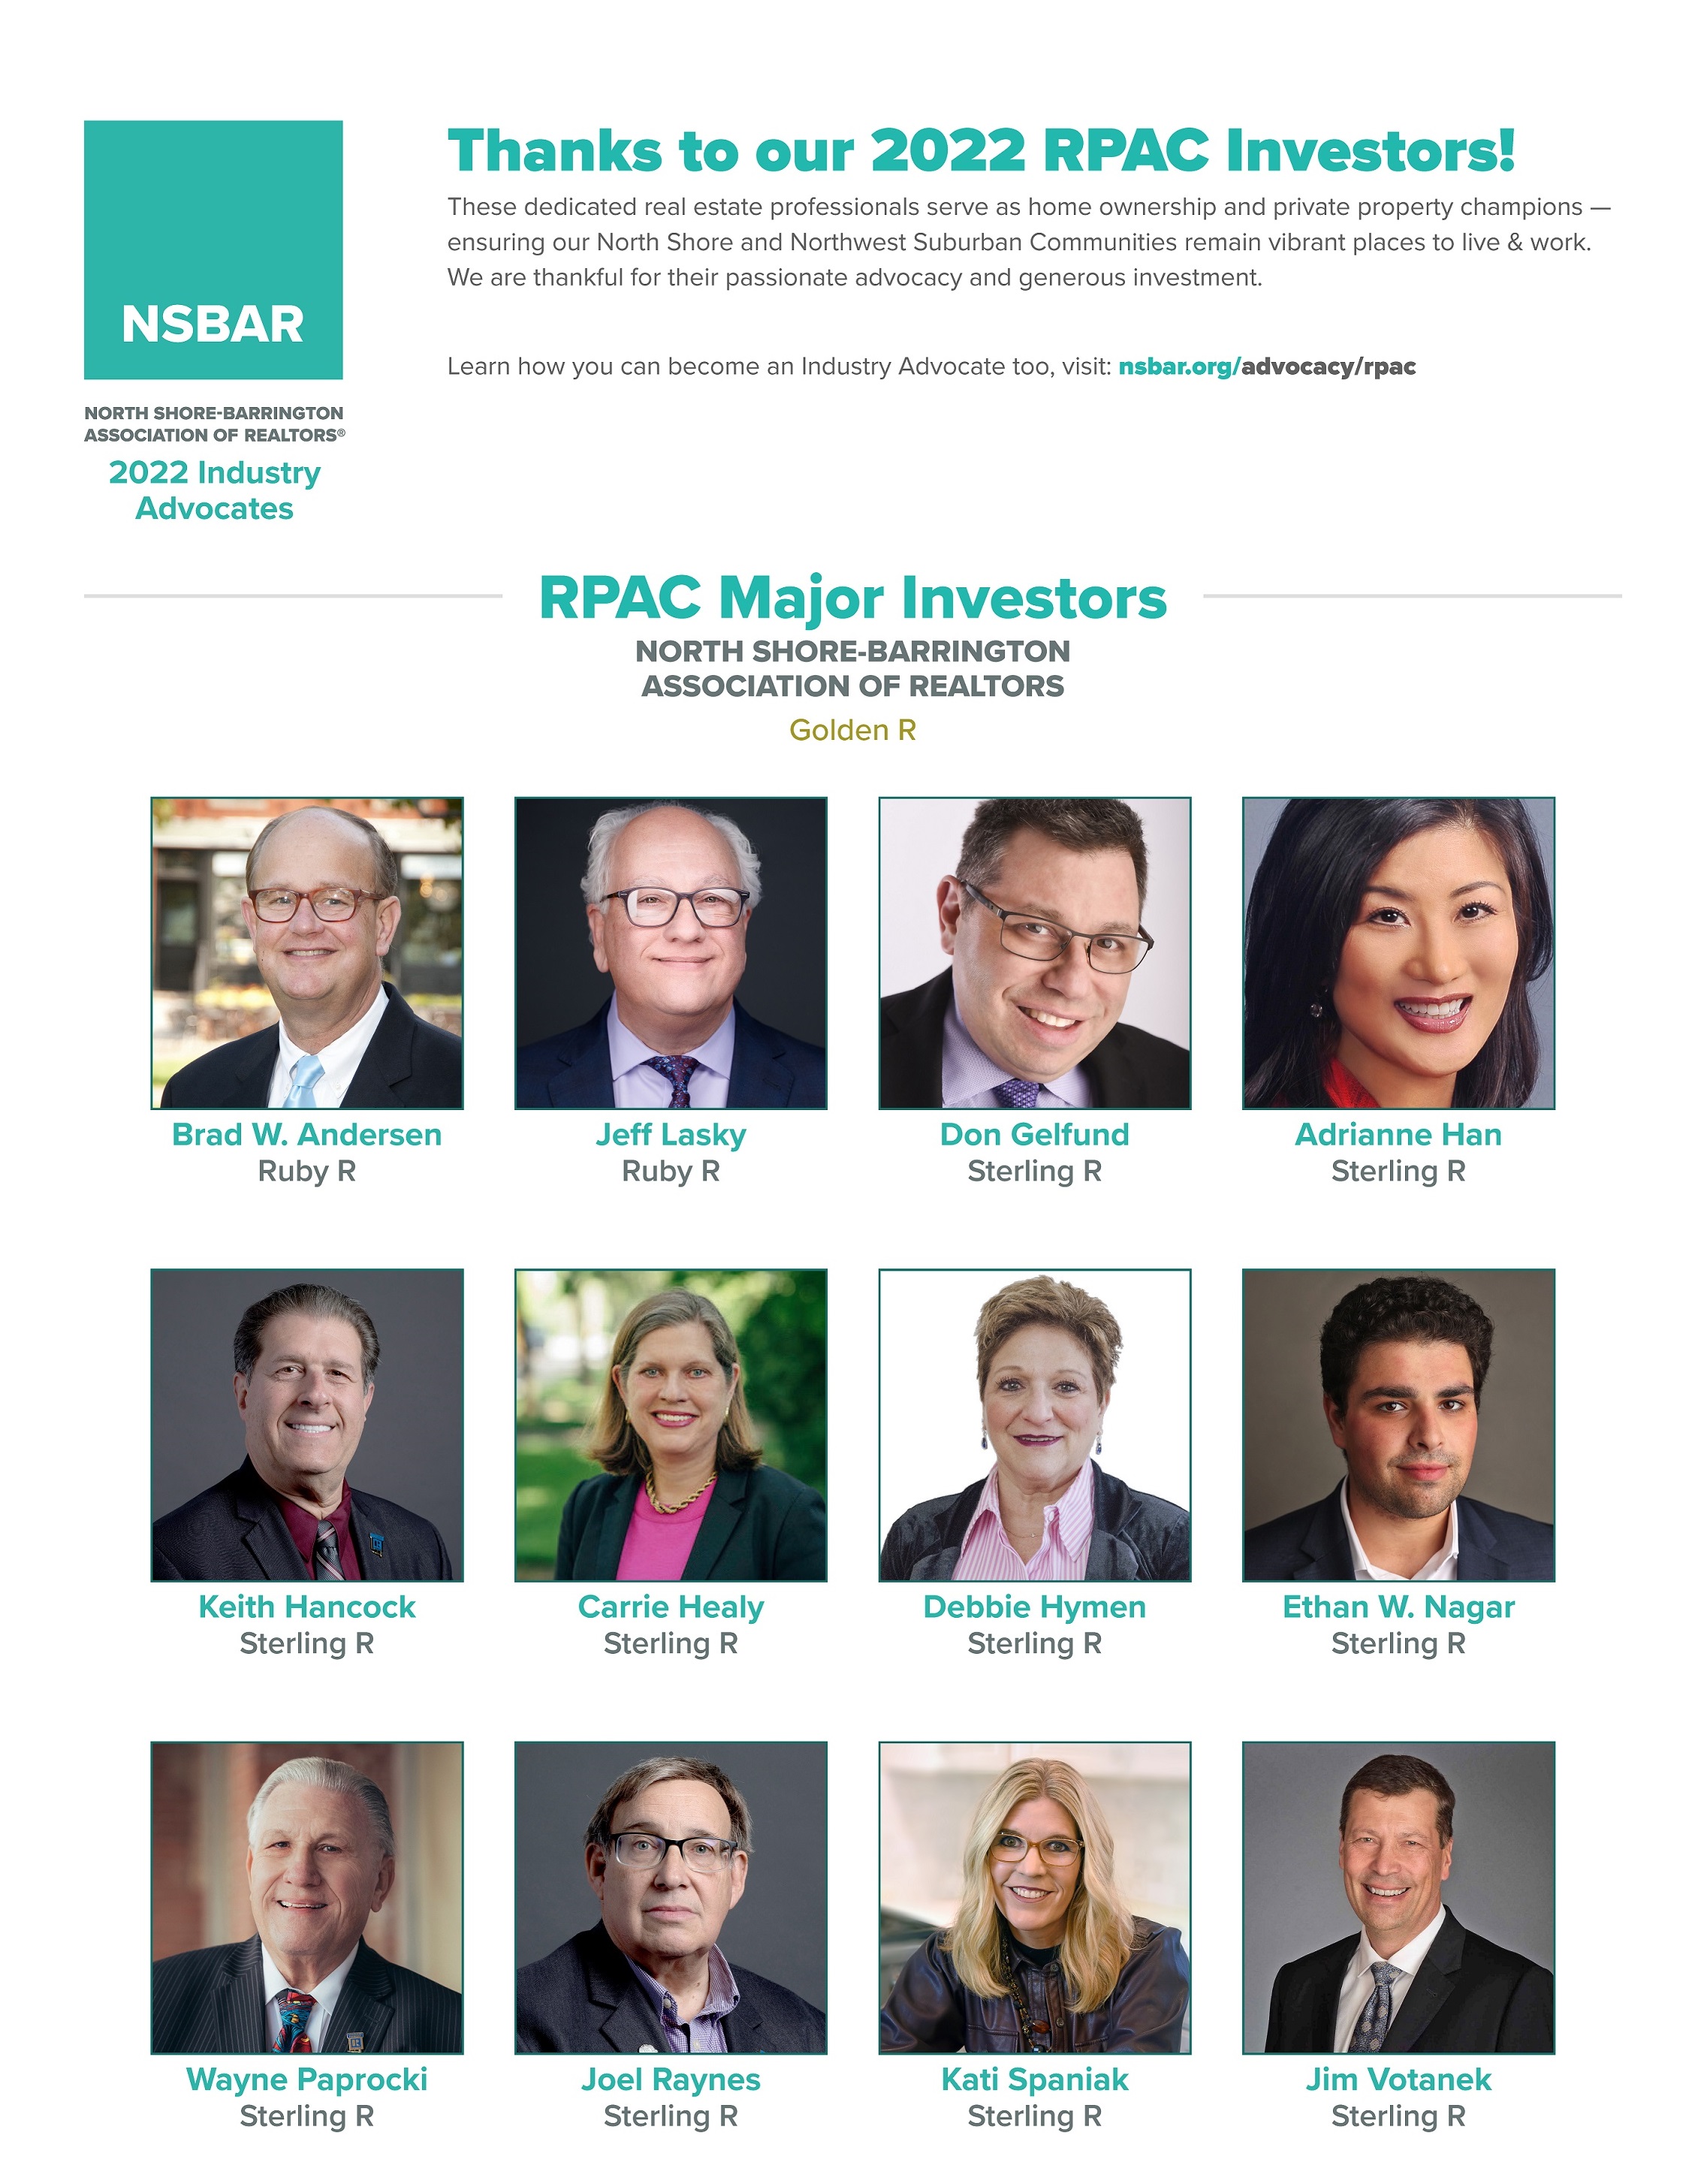 RPAC Major Investors